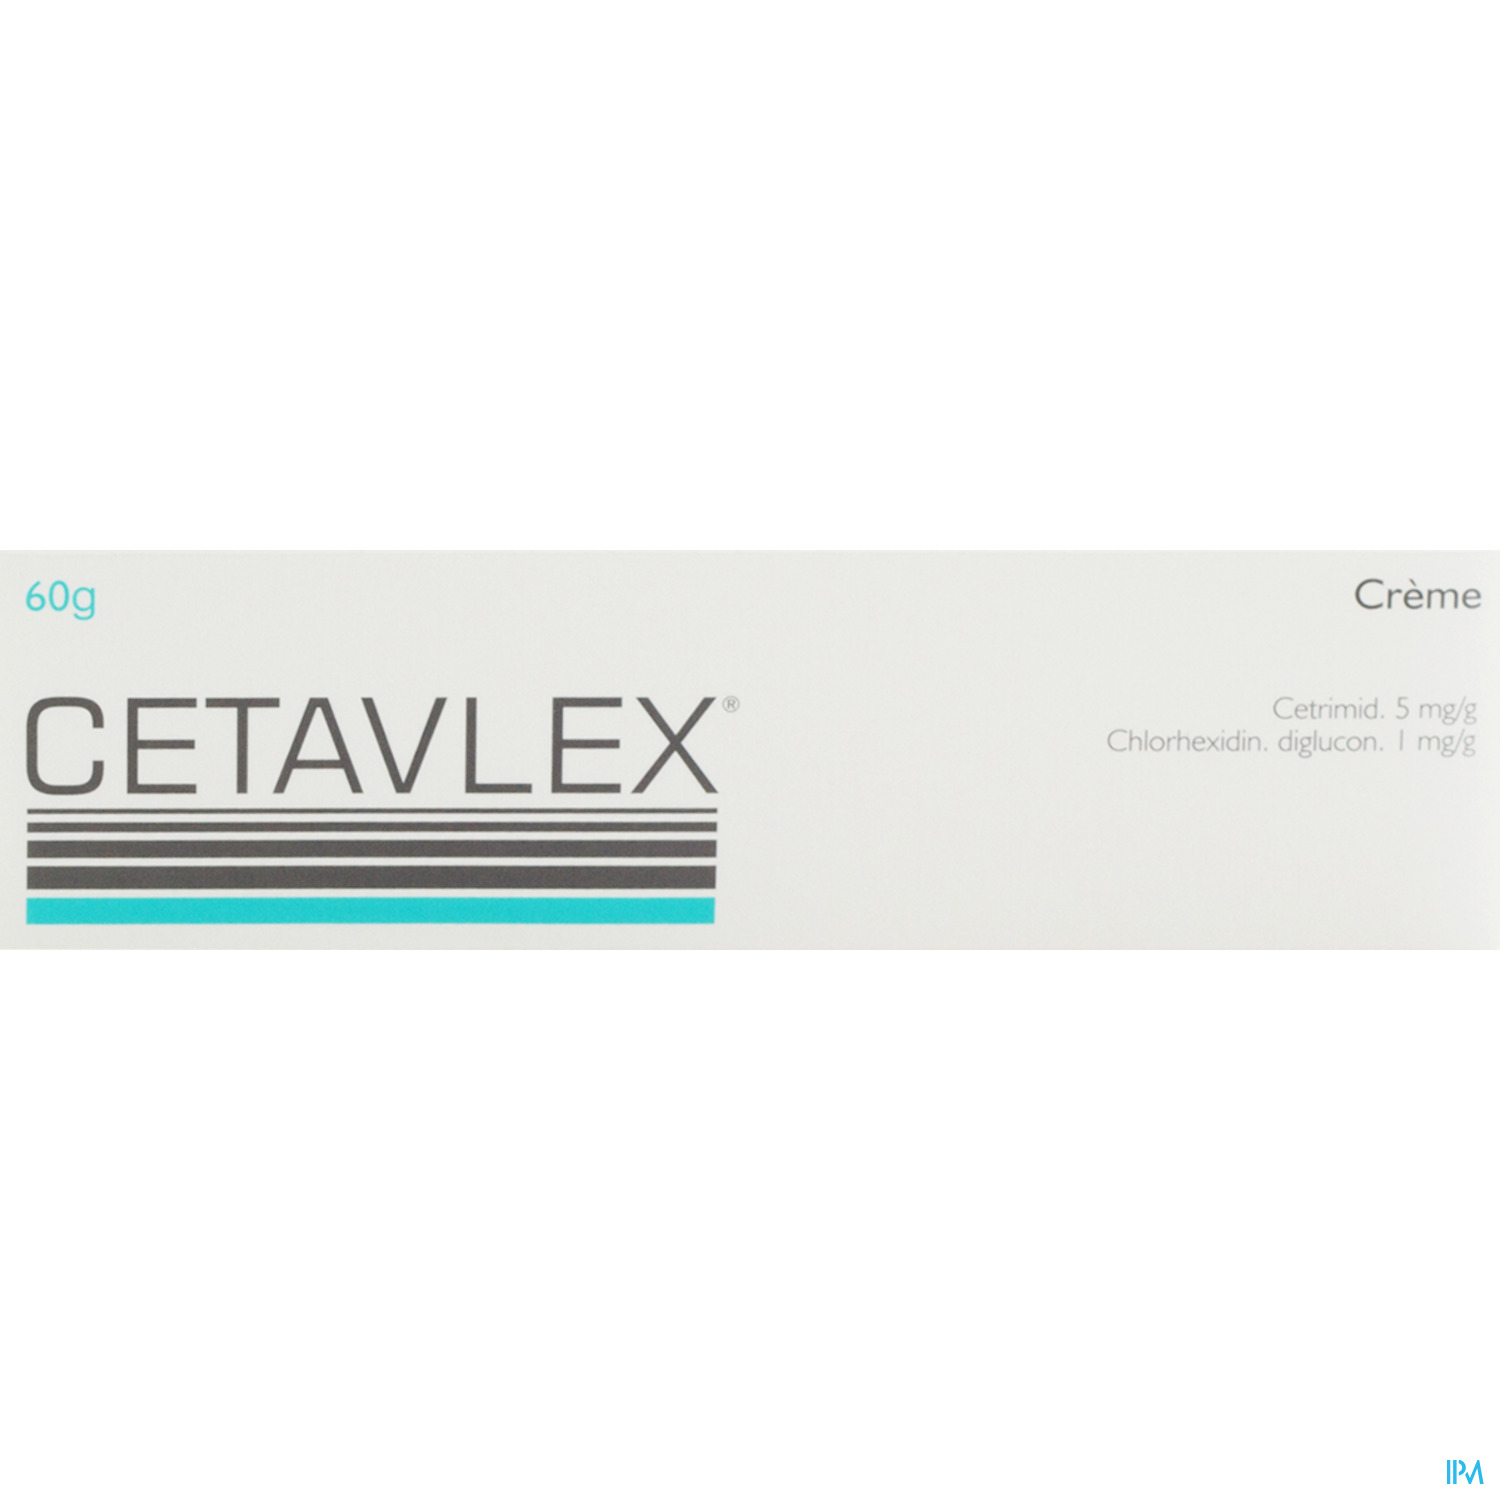 Cetavlex Creme Tube 60g